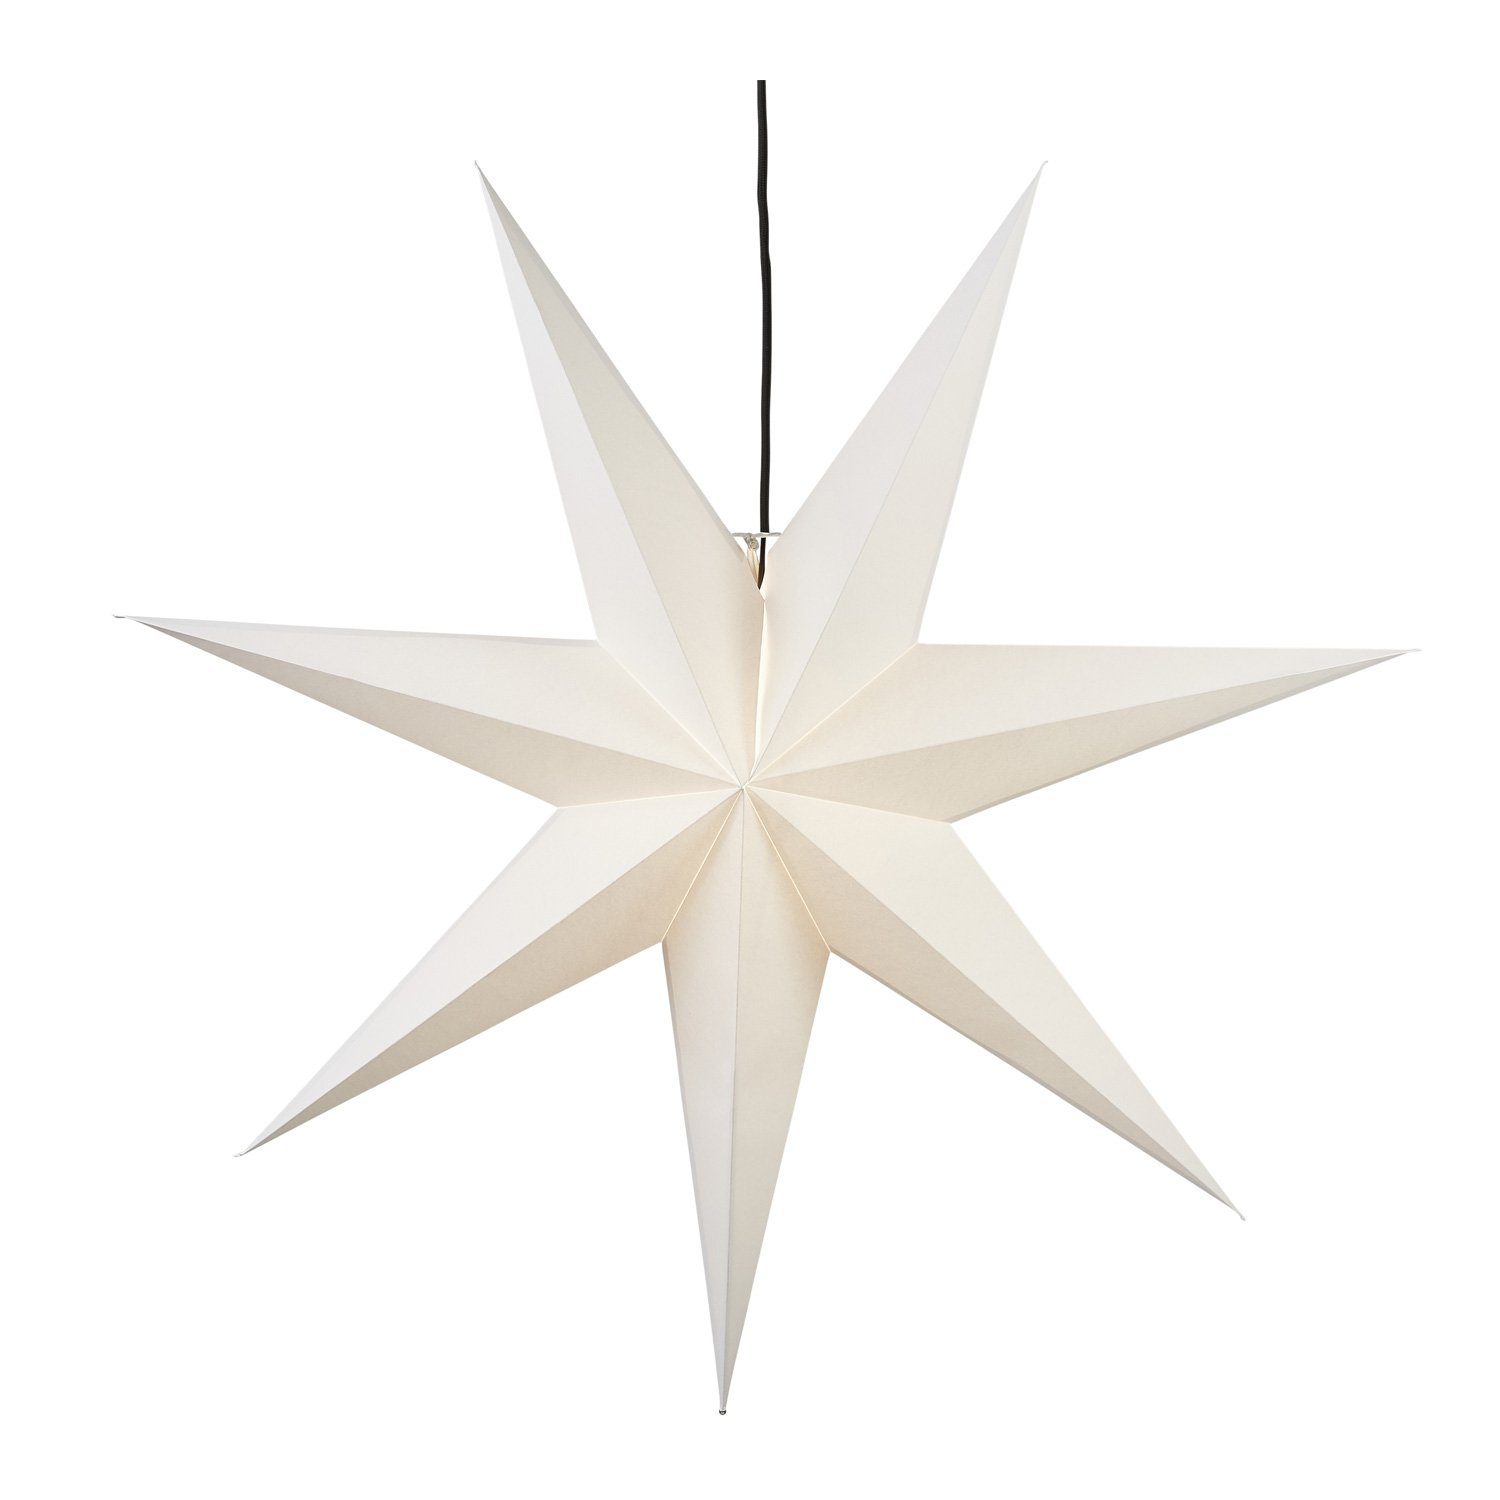 STAR TRADING Faltstern 100cm hängend mit Stern weiß Kabel 7zackig Papierstern LED Leuchtstern